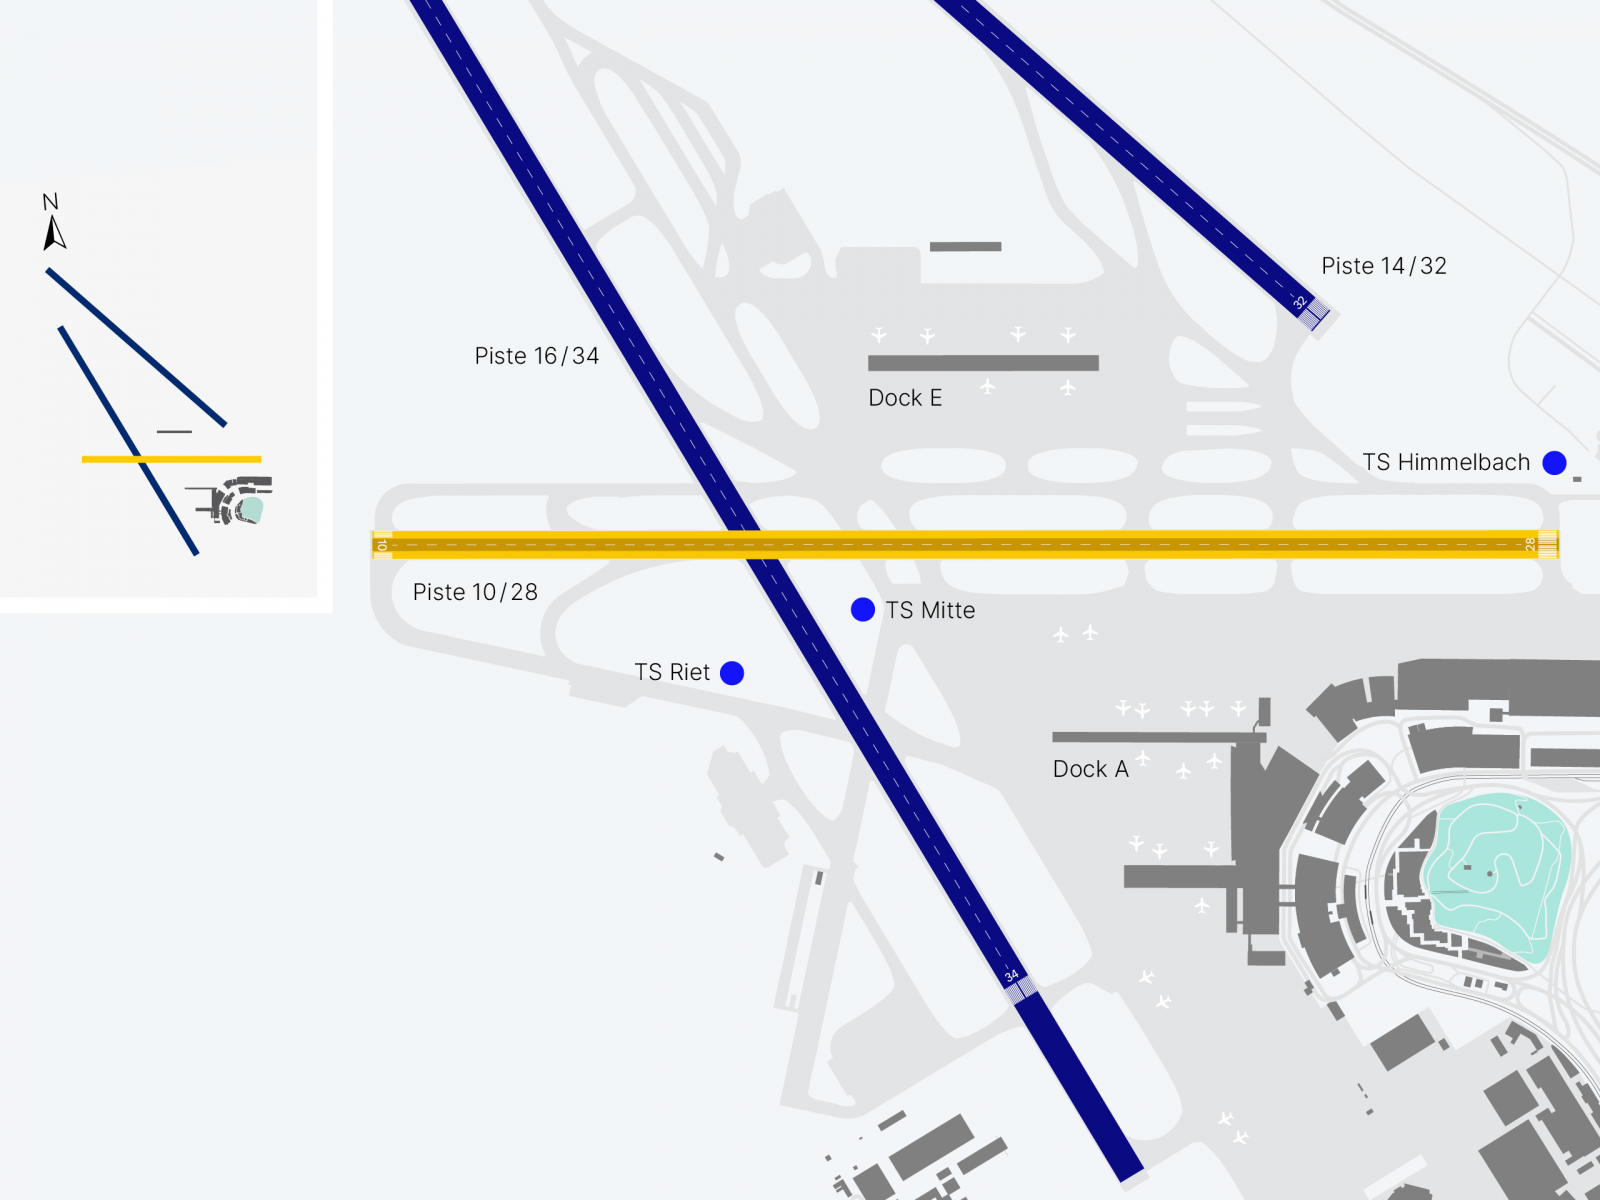 Plan de l'assainissement de la piste de l'aéroport de Zürich. Lors des travaux qui auront lieu la nuit, le terre-plein central de la piste 10/28, large de 22,8 m sera rénové.